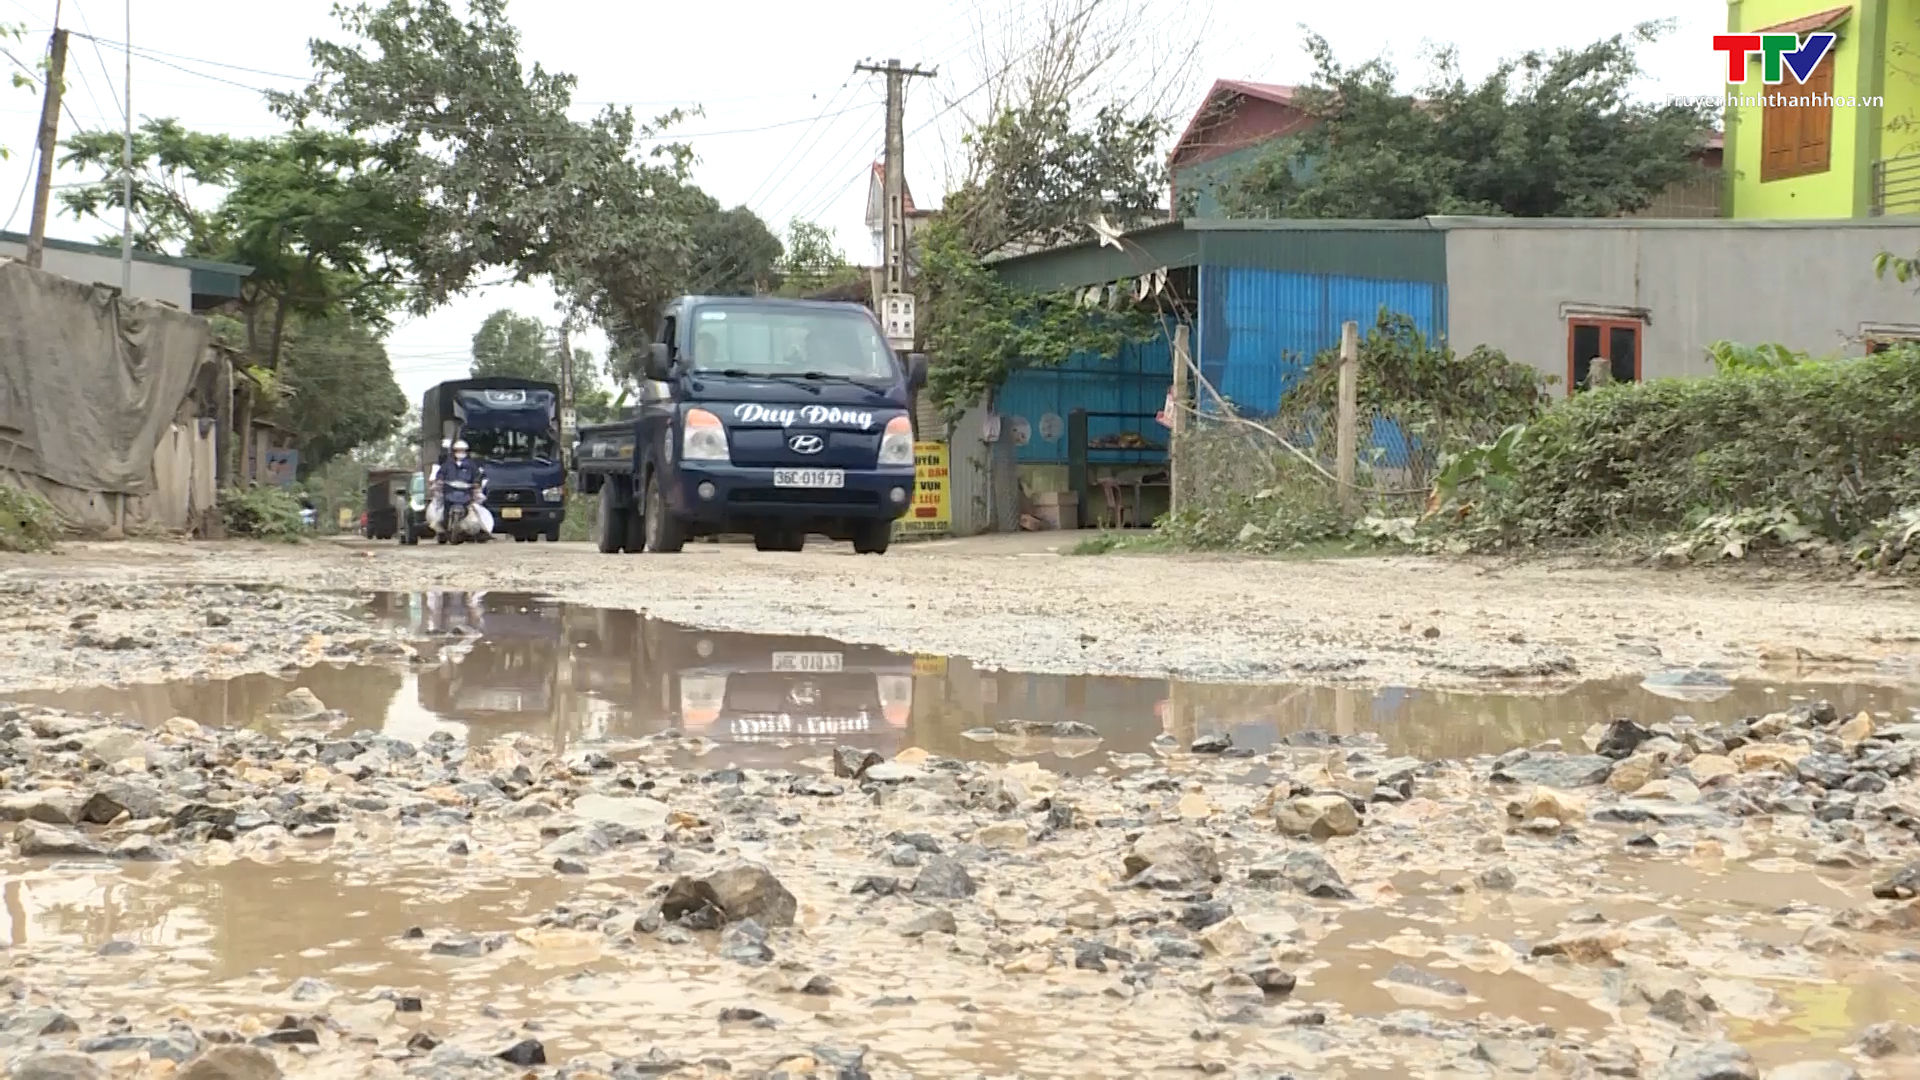 Tỉnh lộ 527 đoạn qua huyện Nga Sơn và thị xã Bỉm Sơn xuống cấp, tiềm ẩn nguy cơ mất an toàn giao thông - Ảnh 4.